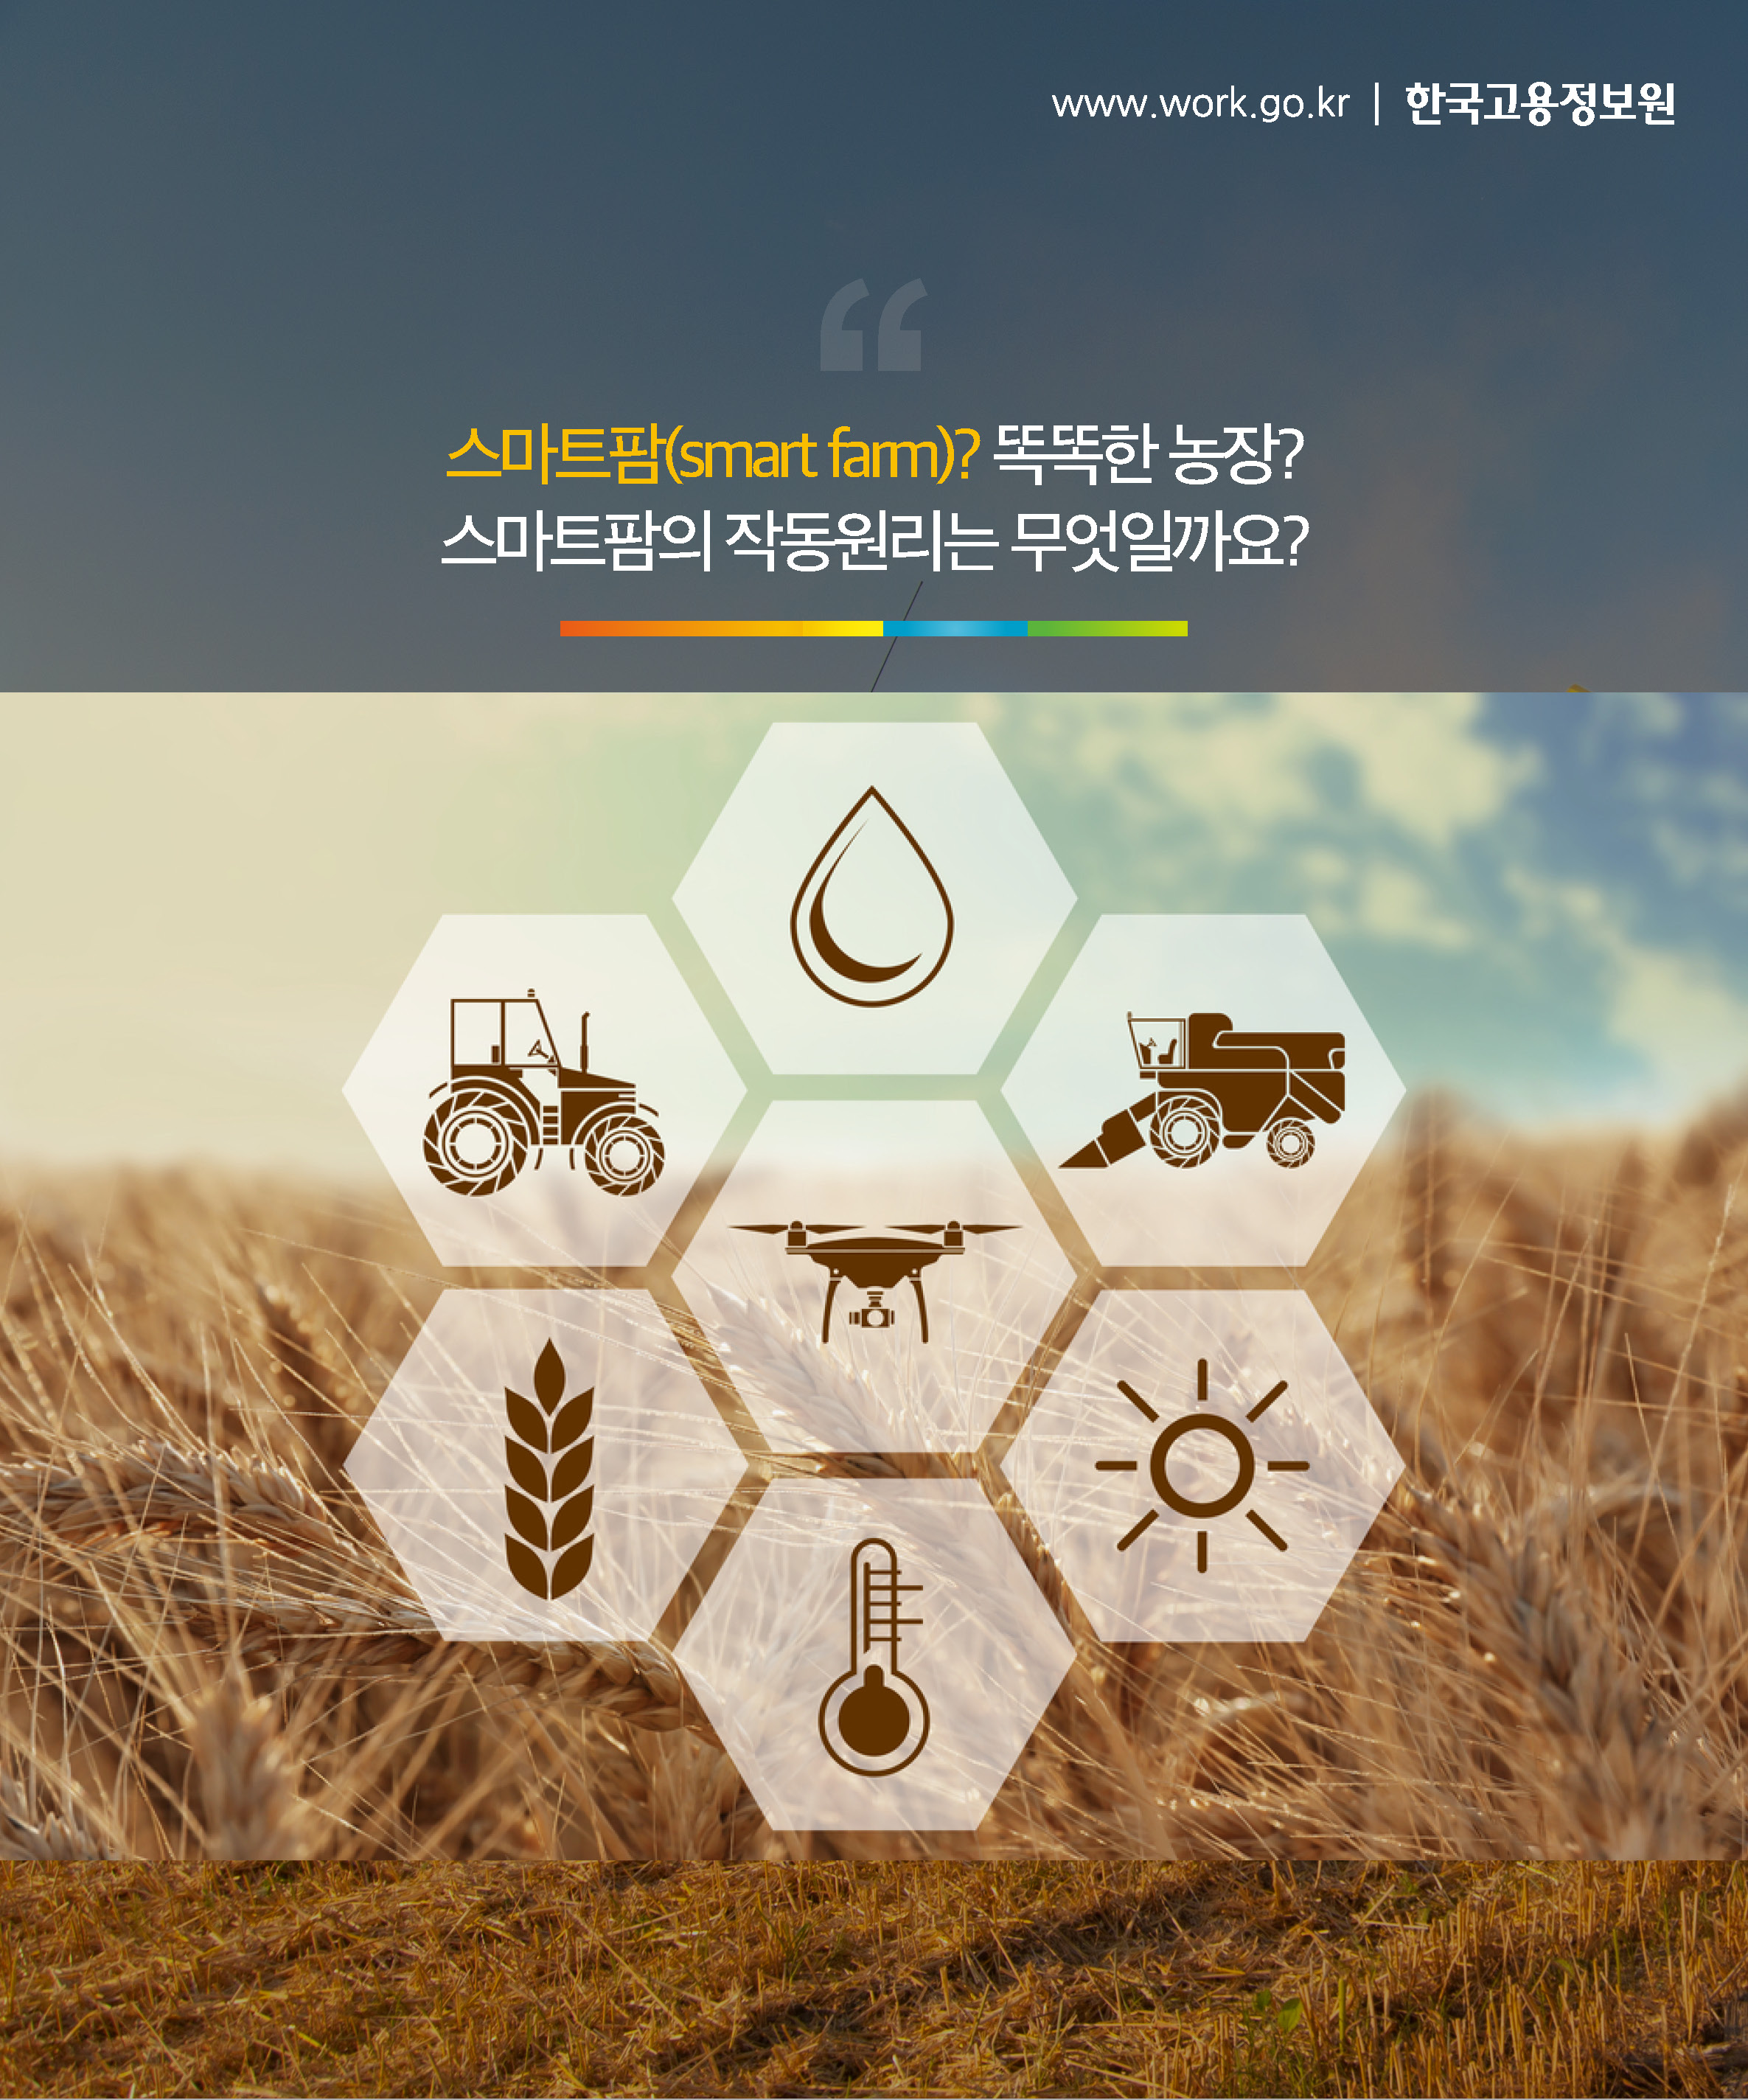 스마트팜(smart farm)? 똑똑한 농장?
스마트팜의 작동원리는 무엇일까요?